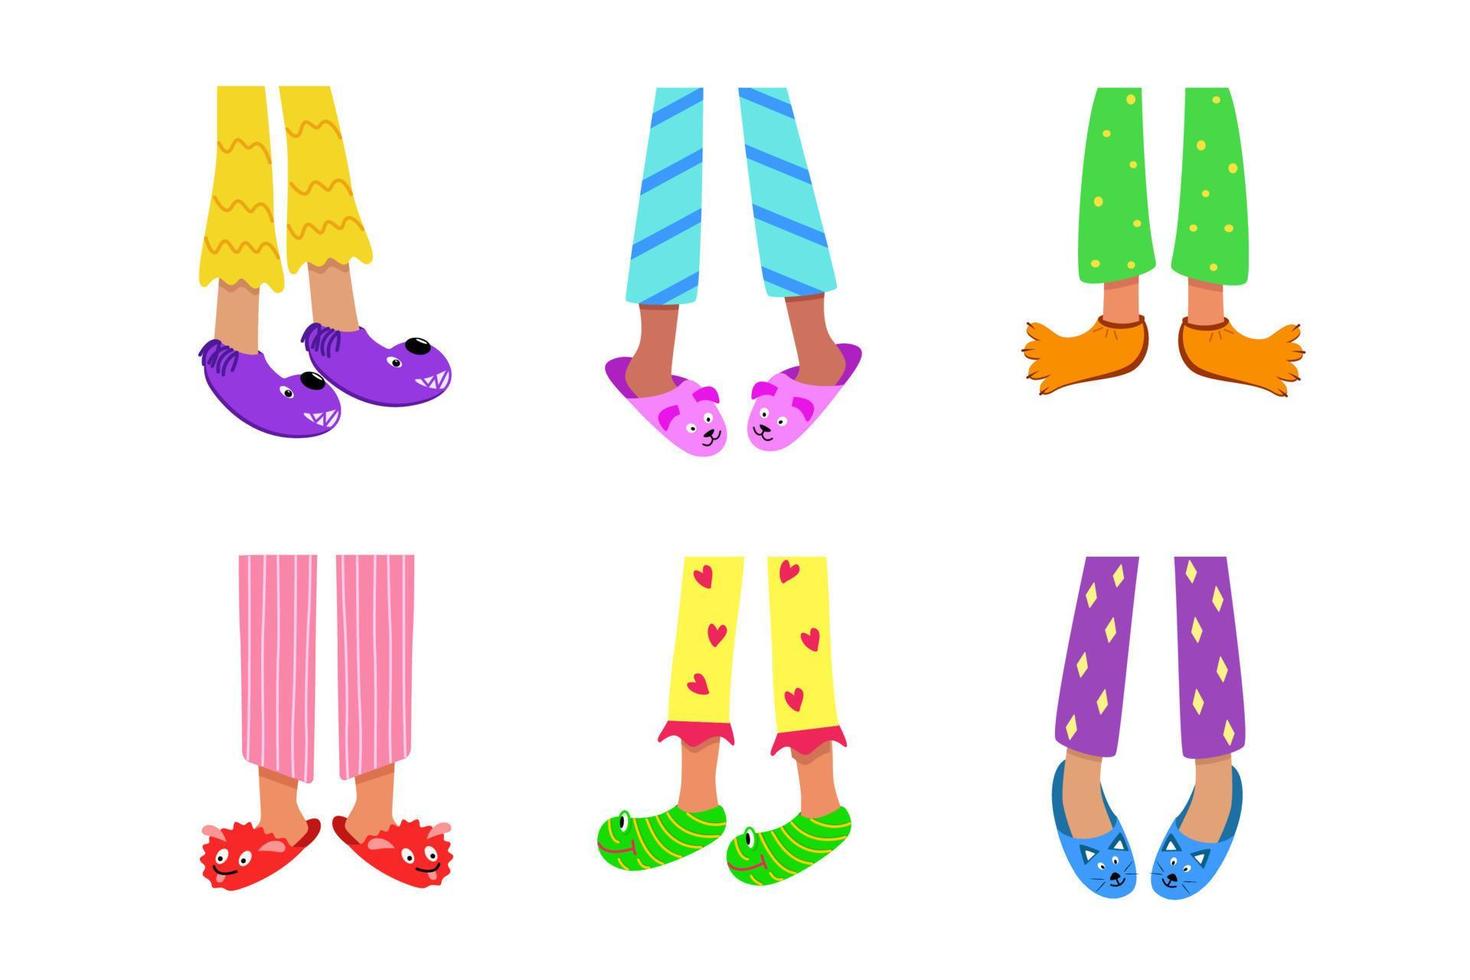 pies de niños en pijamas de colores y zapatillas divertidas. ilustración vectorial de ropa y zapatos para dormir en casa. el concepto de una fiesta de pijamas vector